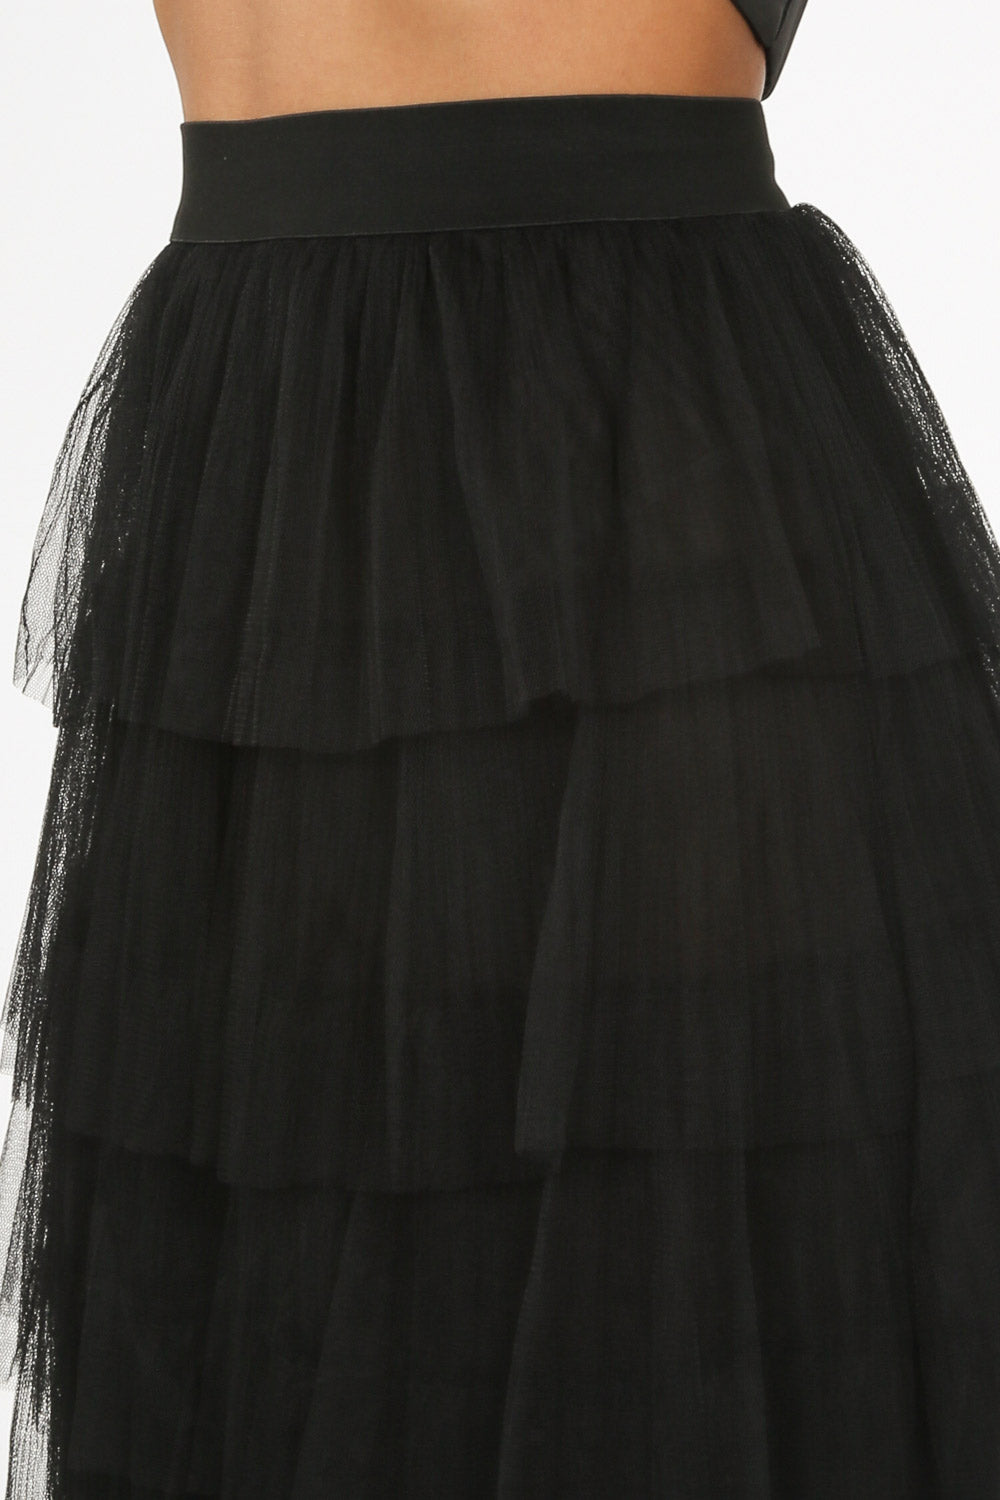 black tulle skirt melbourne